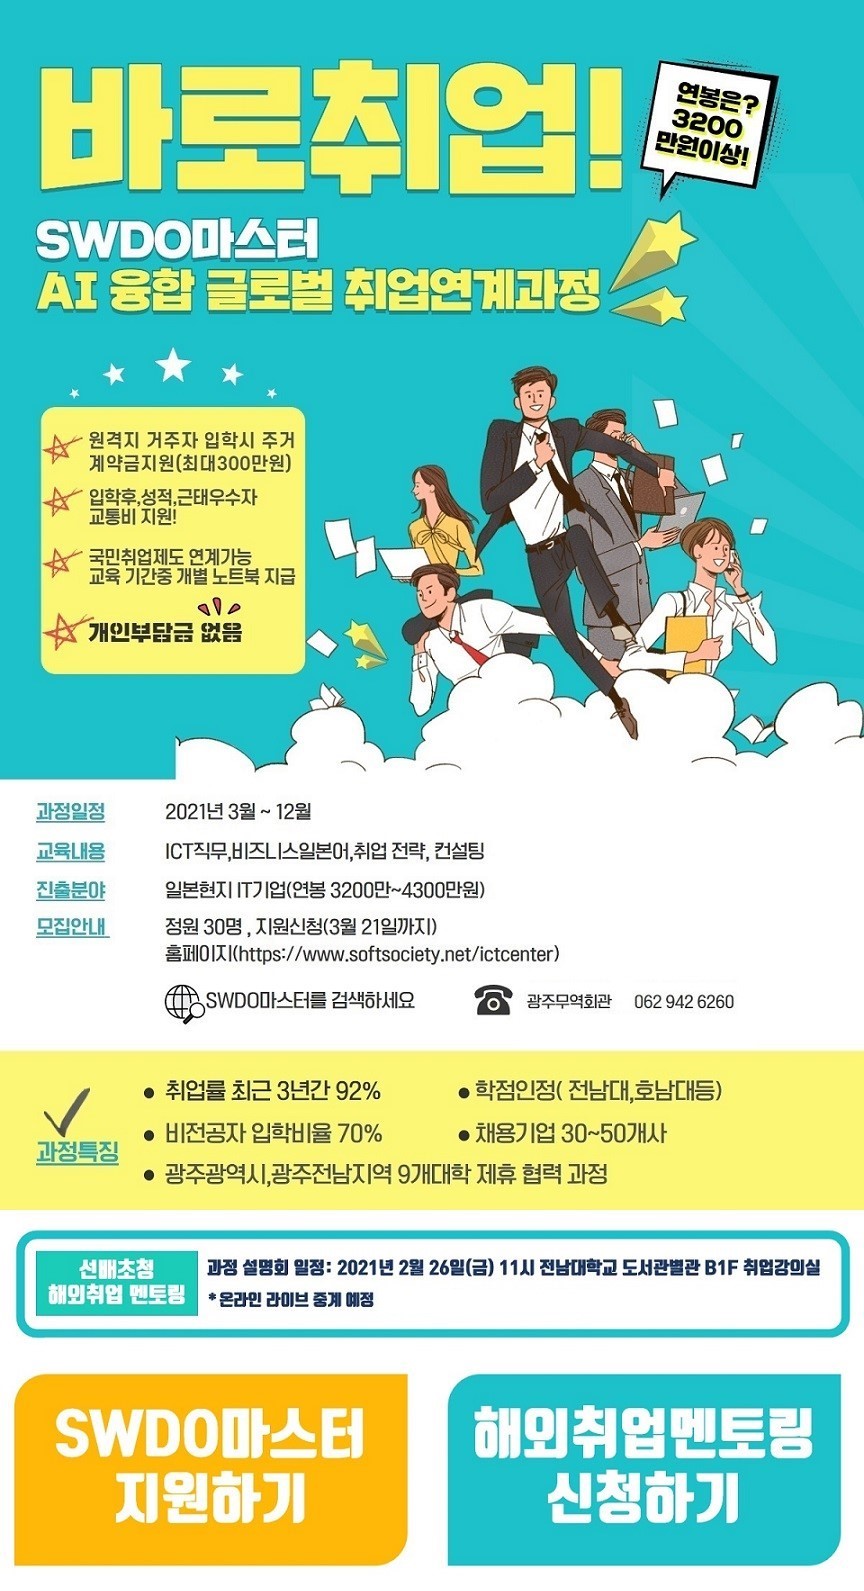 2021년 한국산업인력공단 K-MOVE스쿨 해외취업과정 모집